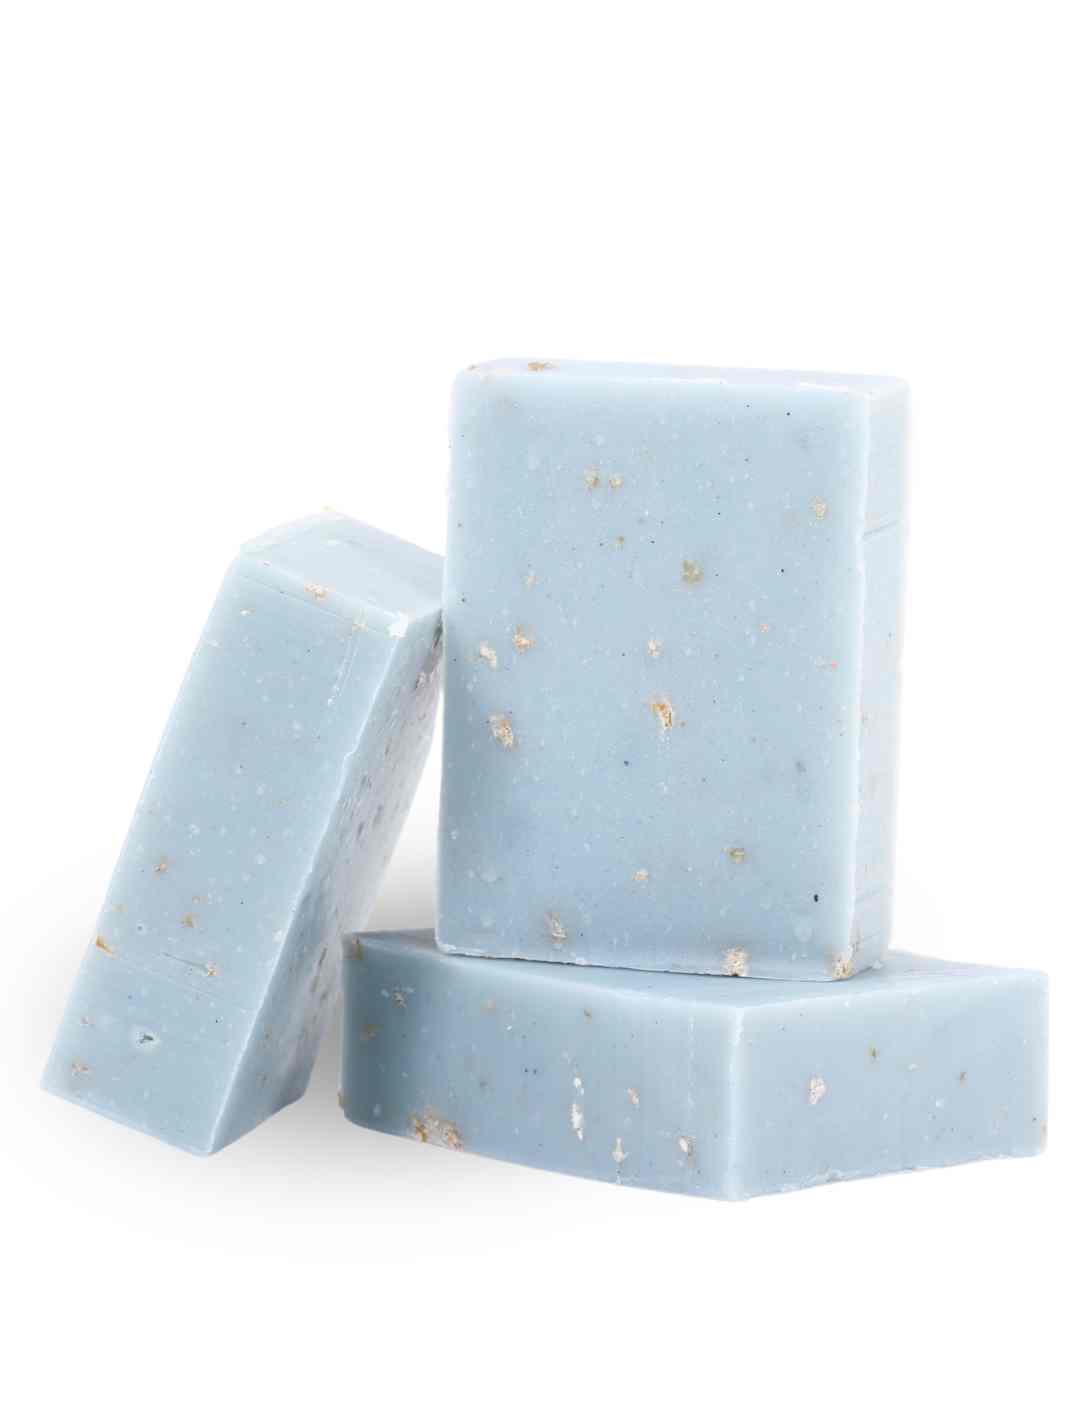 Good Soul Shop Moisturizing Snowflake Soap | Peppermint + Lavender Essential Oils